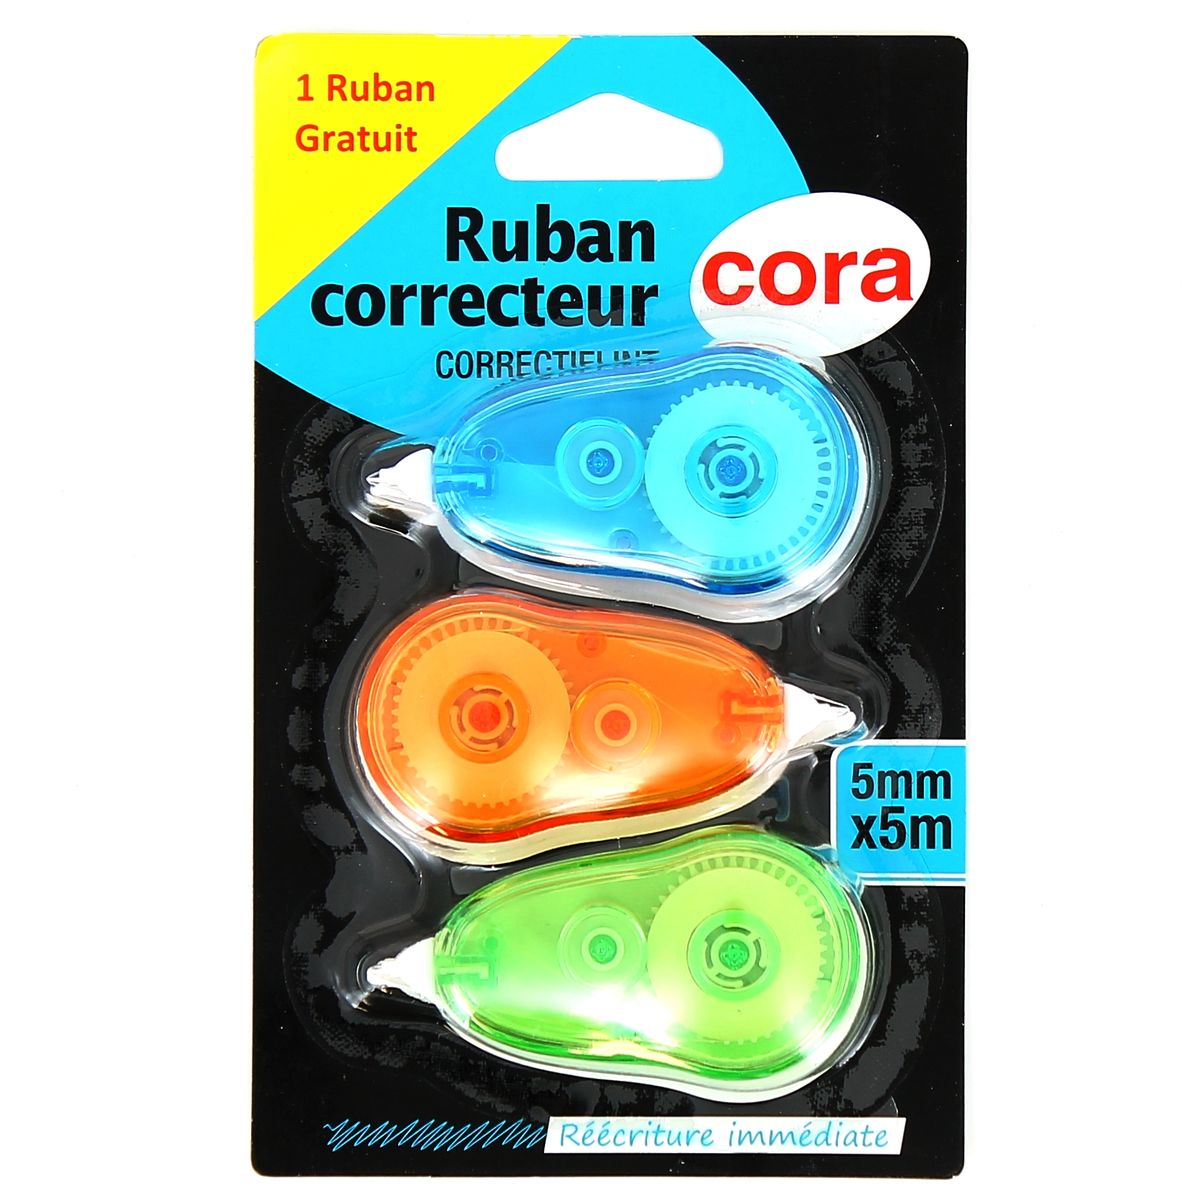 Livraison à domicile Cora Rubans correcteur 5mm x 5m, 3 rubans